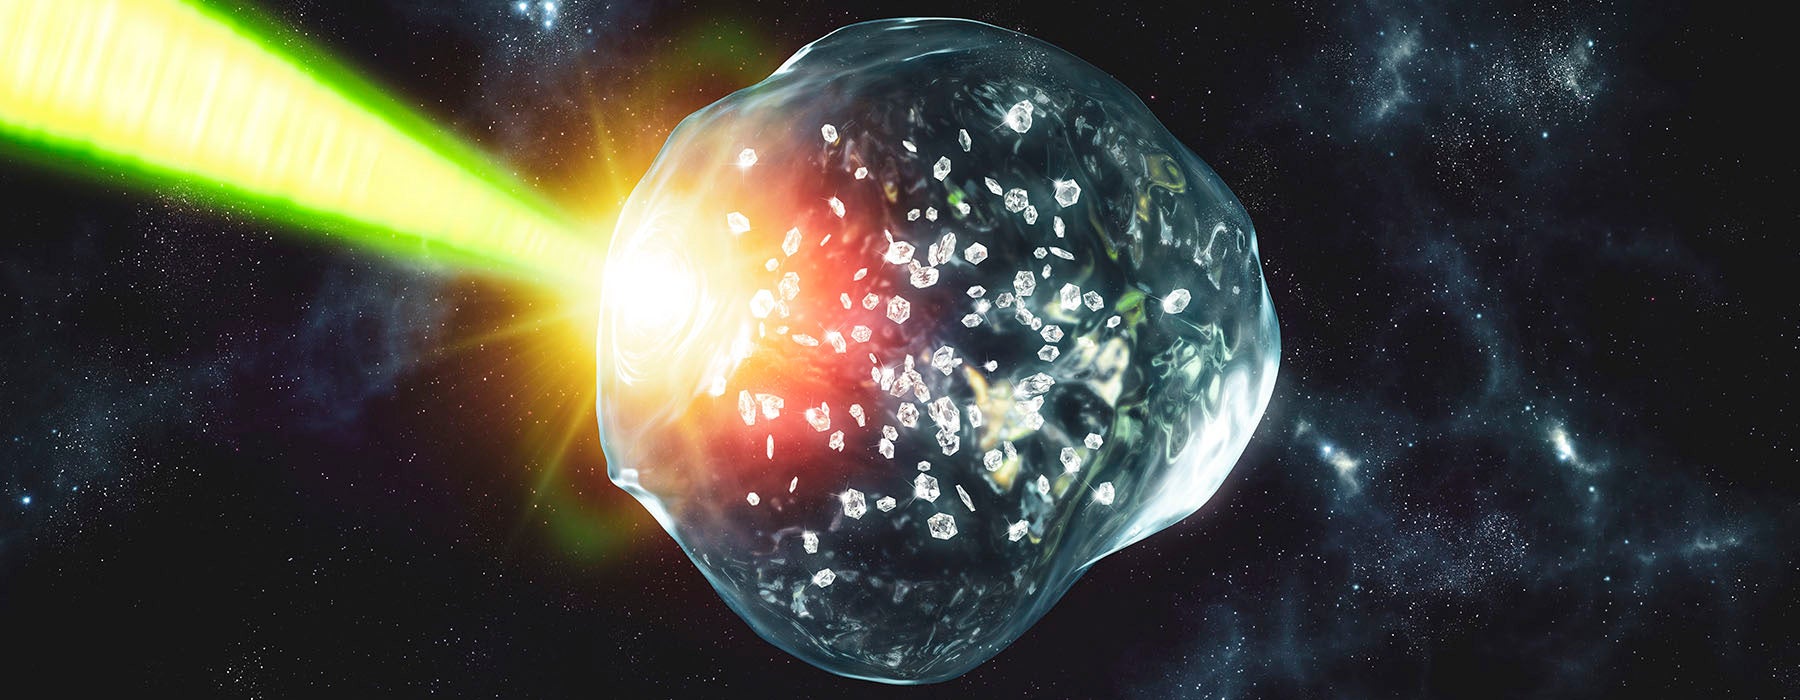 Diamantregen könnte auf Eisriesenplaneten in Gegenwart von Sauerstoff auftreten.